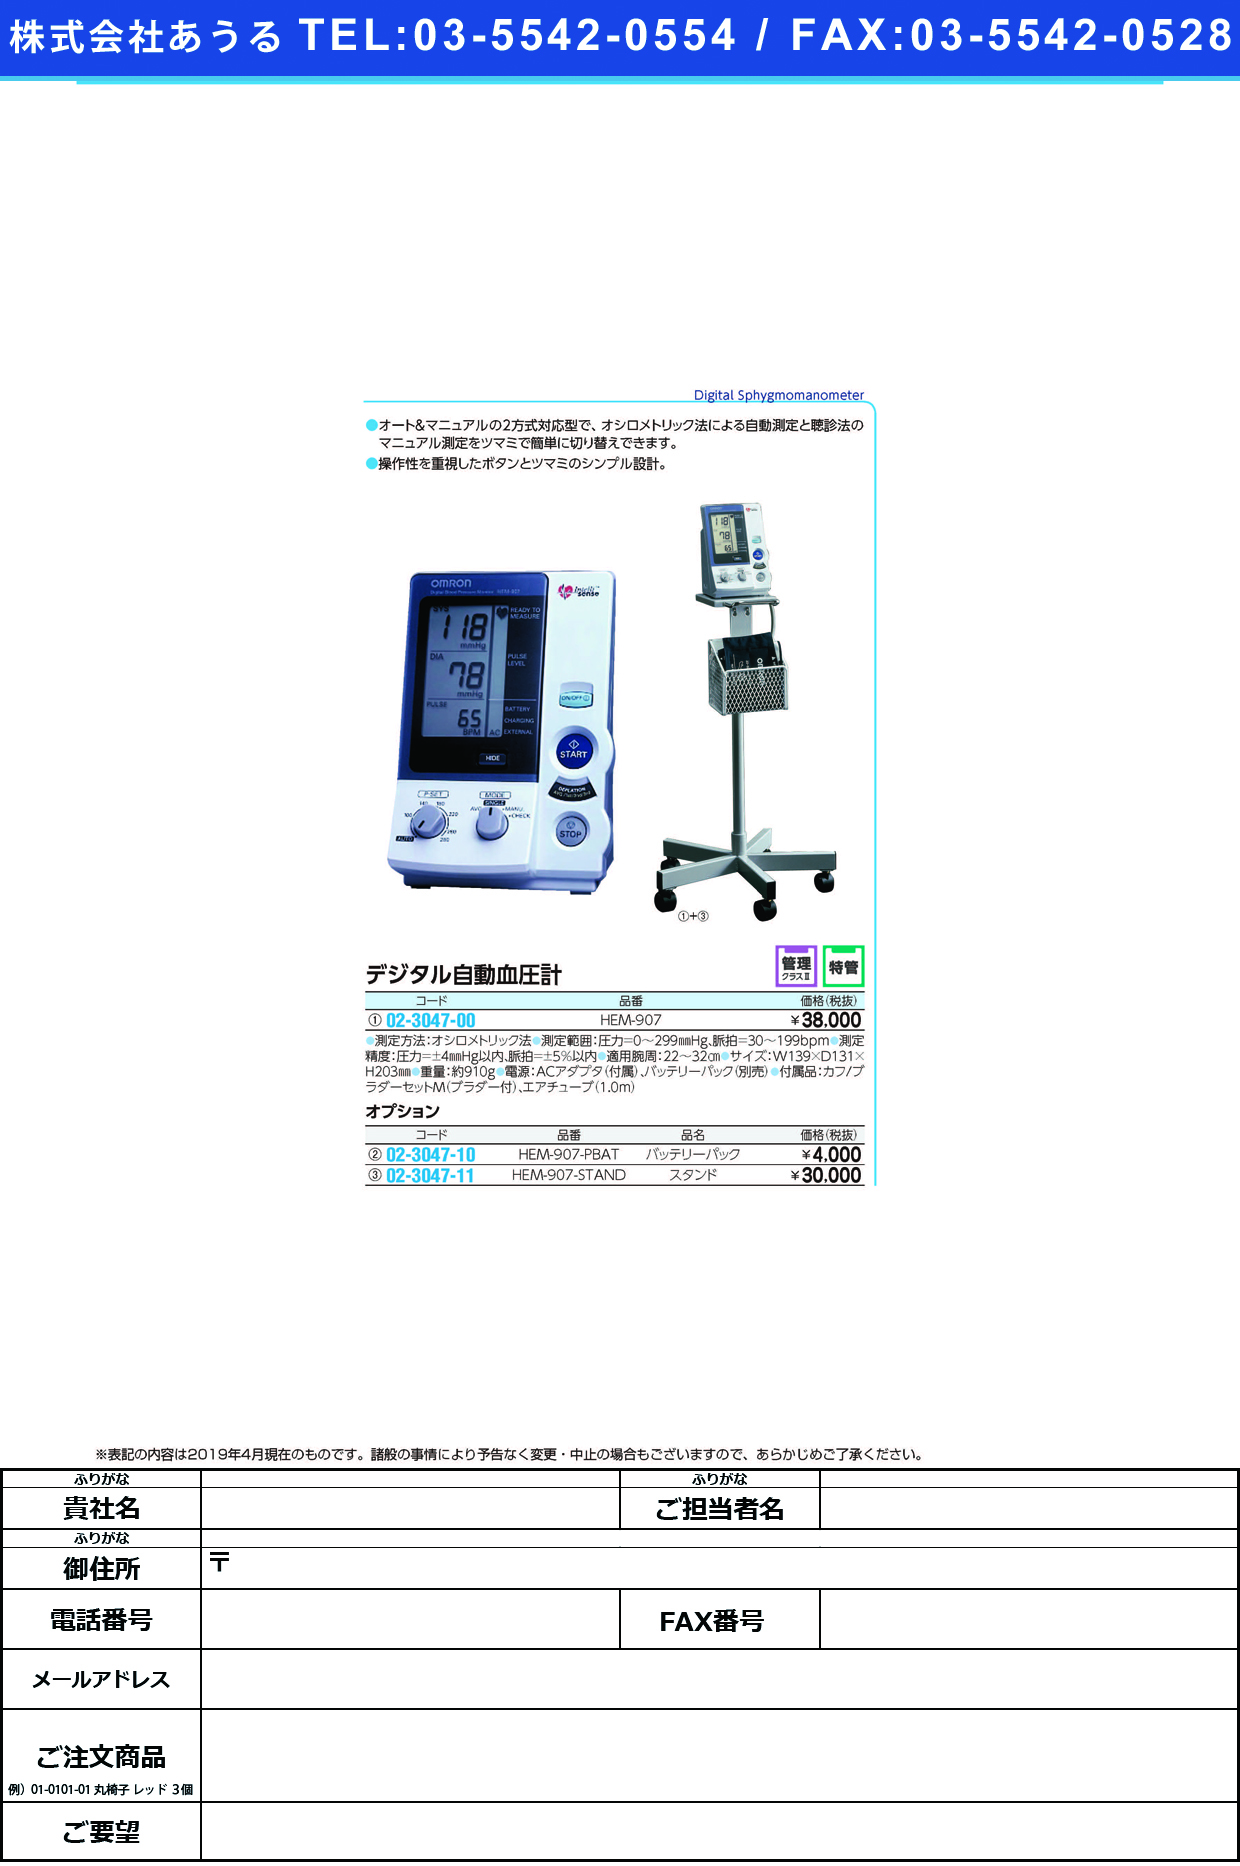 (02-3047-10)血圧計専用バッテリーパック HEM-907-PBAT ｹﾂｱﾂｹｲｾﾝﾖｳﾊﾞｯﾃﾘｰﾊﾟｯｸ(フクダコーリン)【1個単位】【2019年カタログ商品】